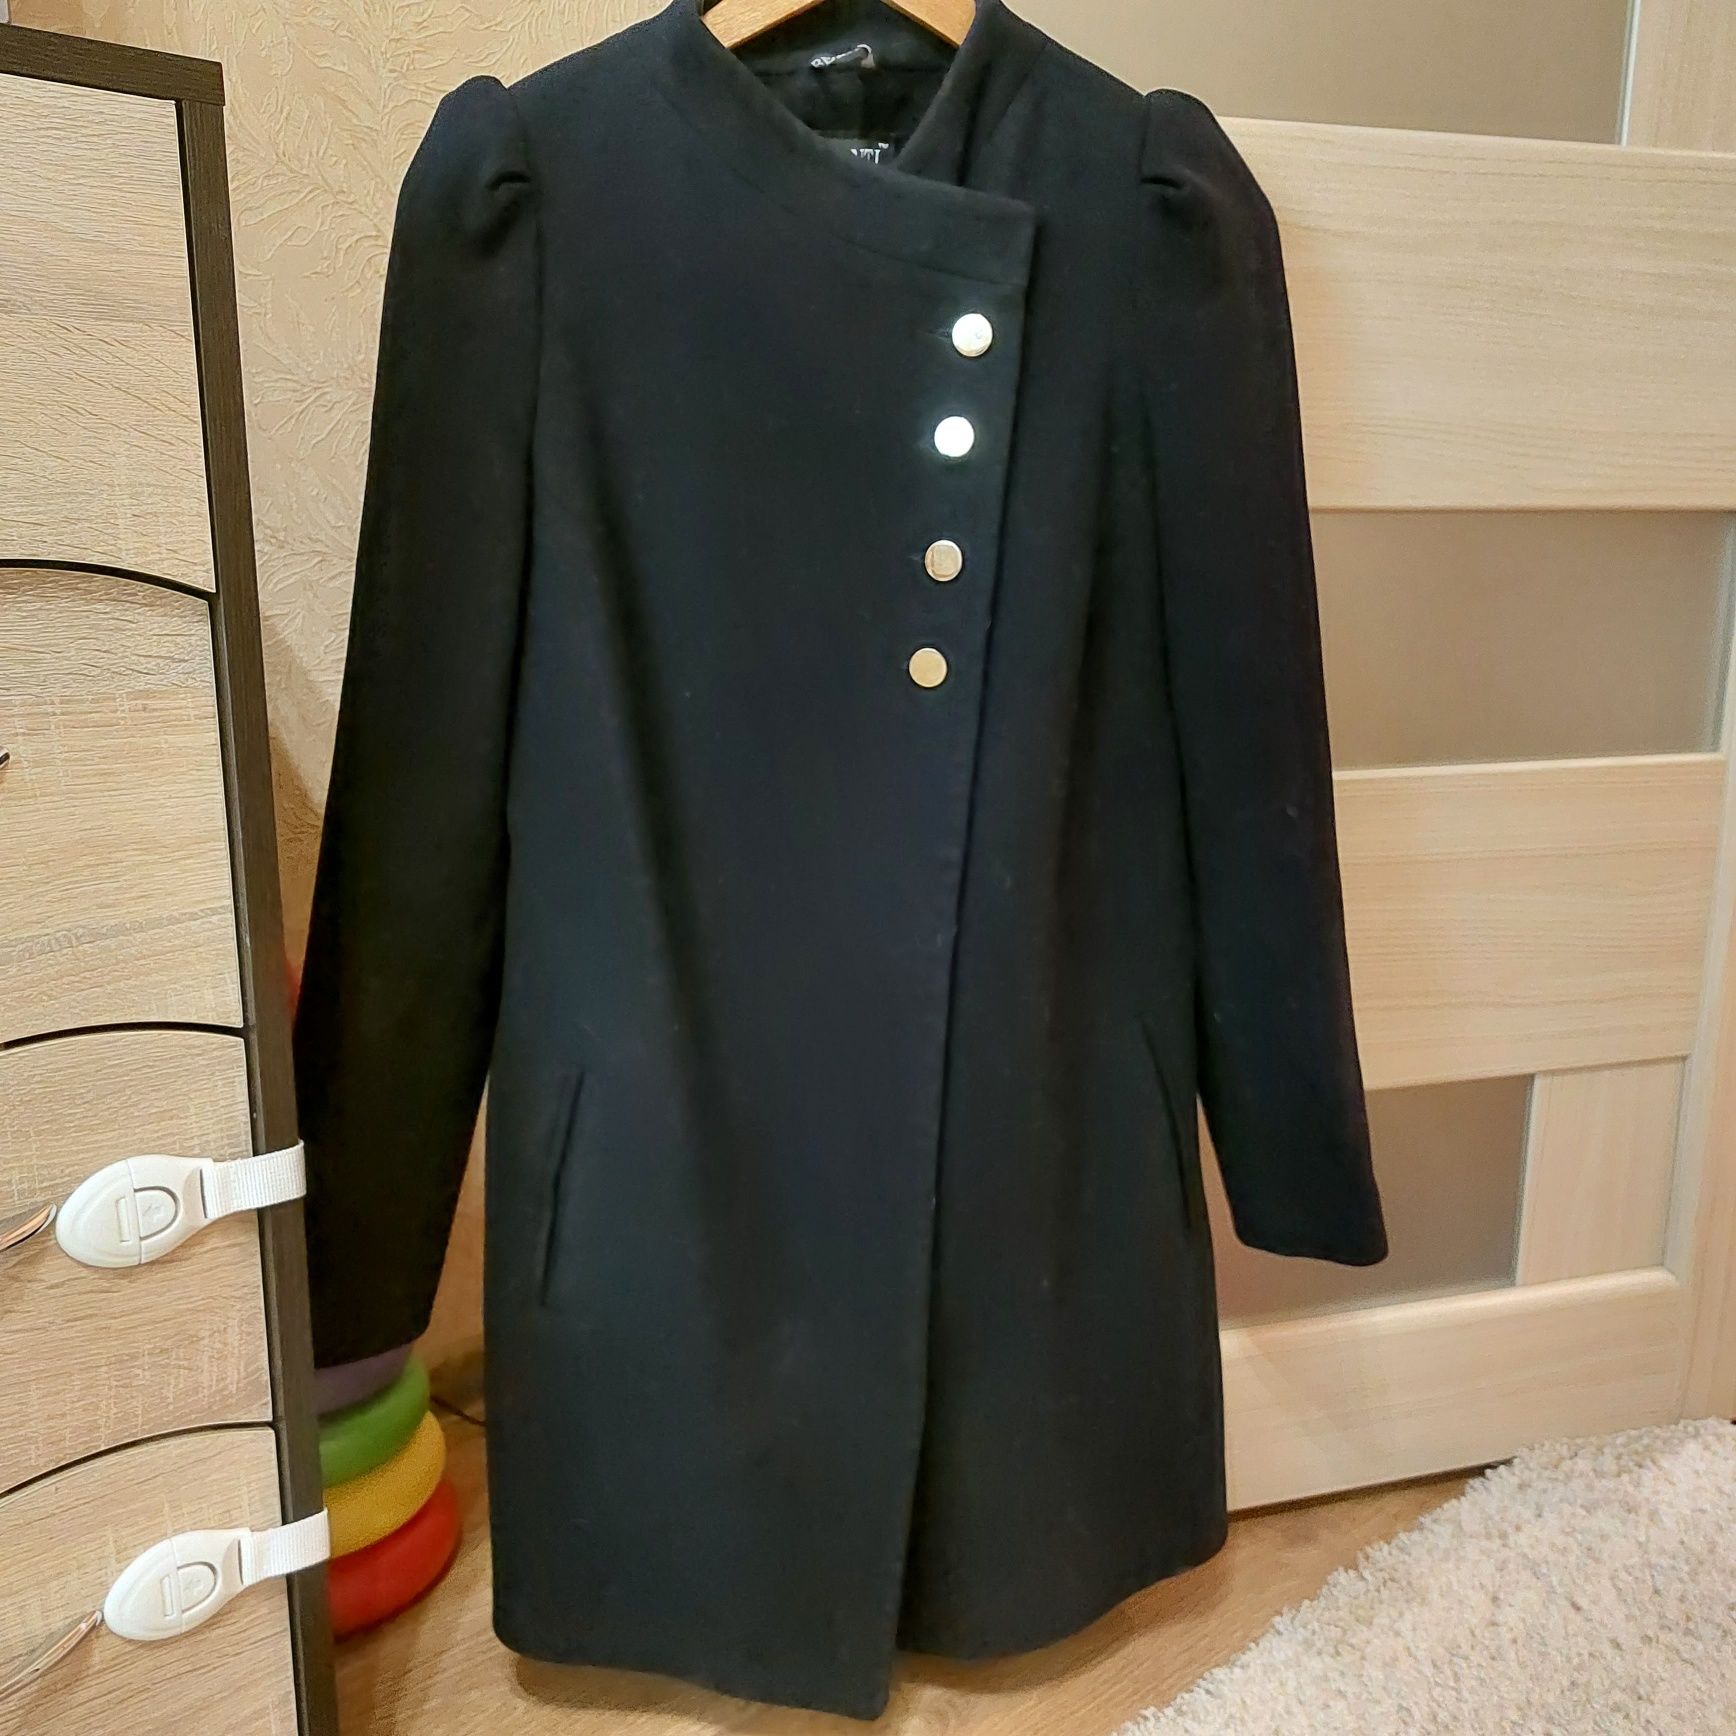 Кашемировое женское пальто